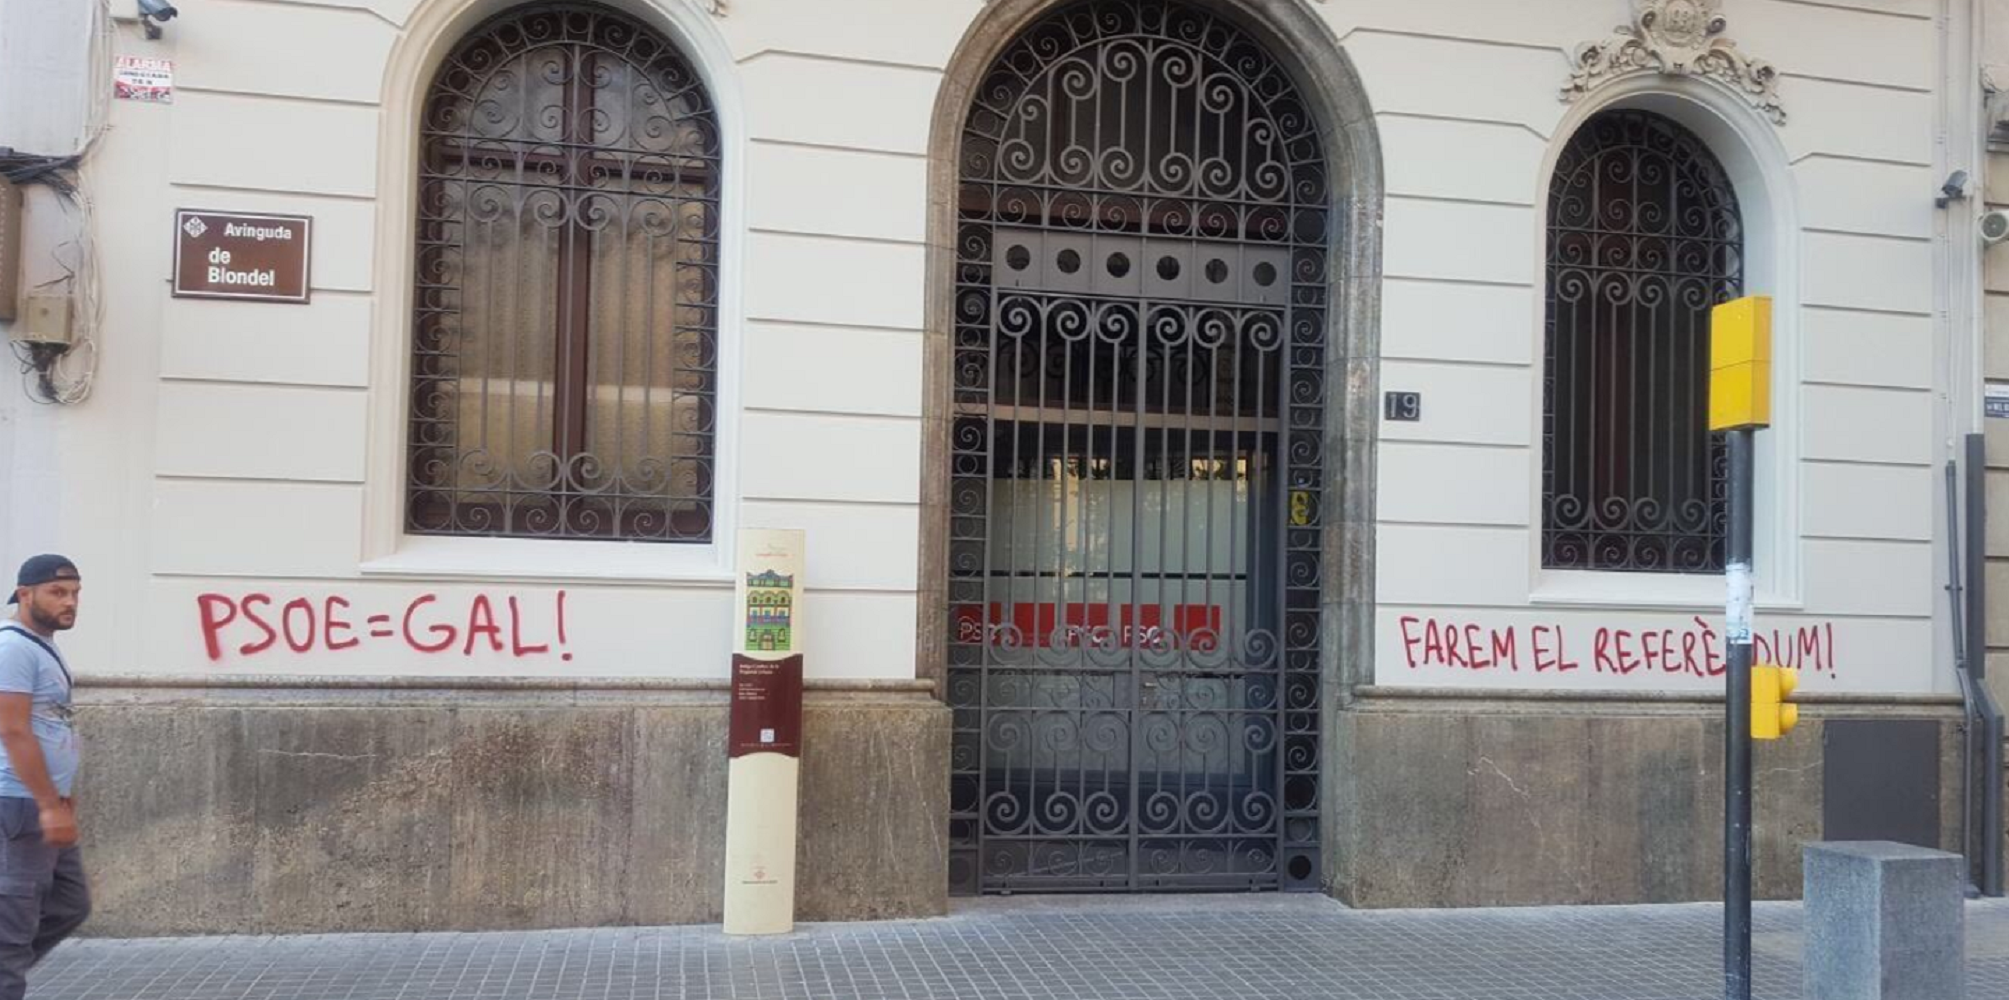 La sede del PSC en Lleida amanece con pintadas a favor del referéndum